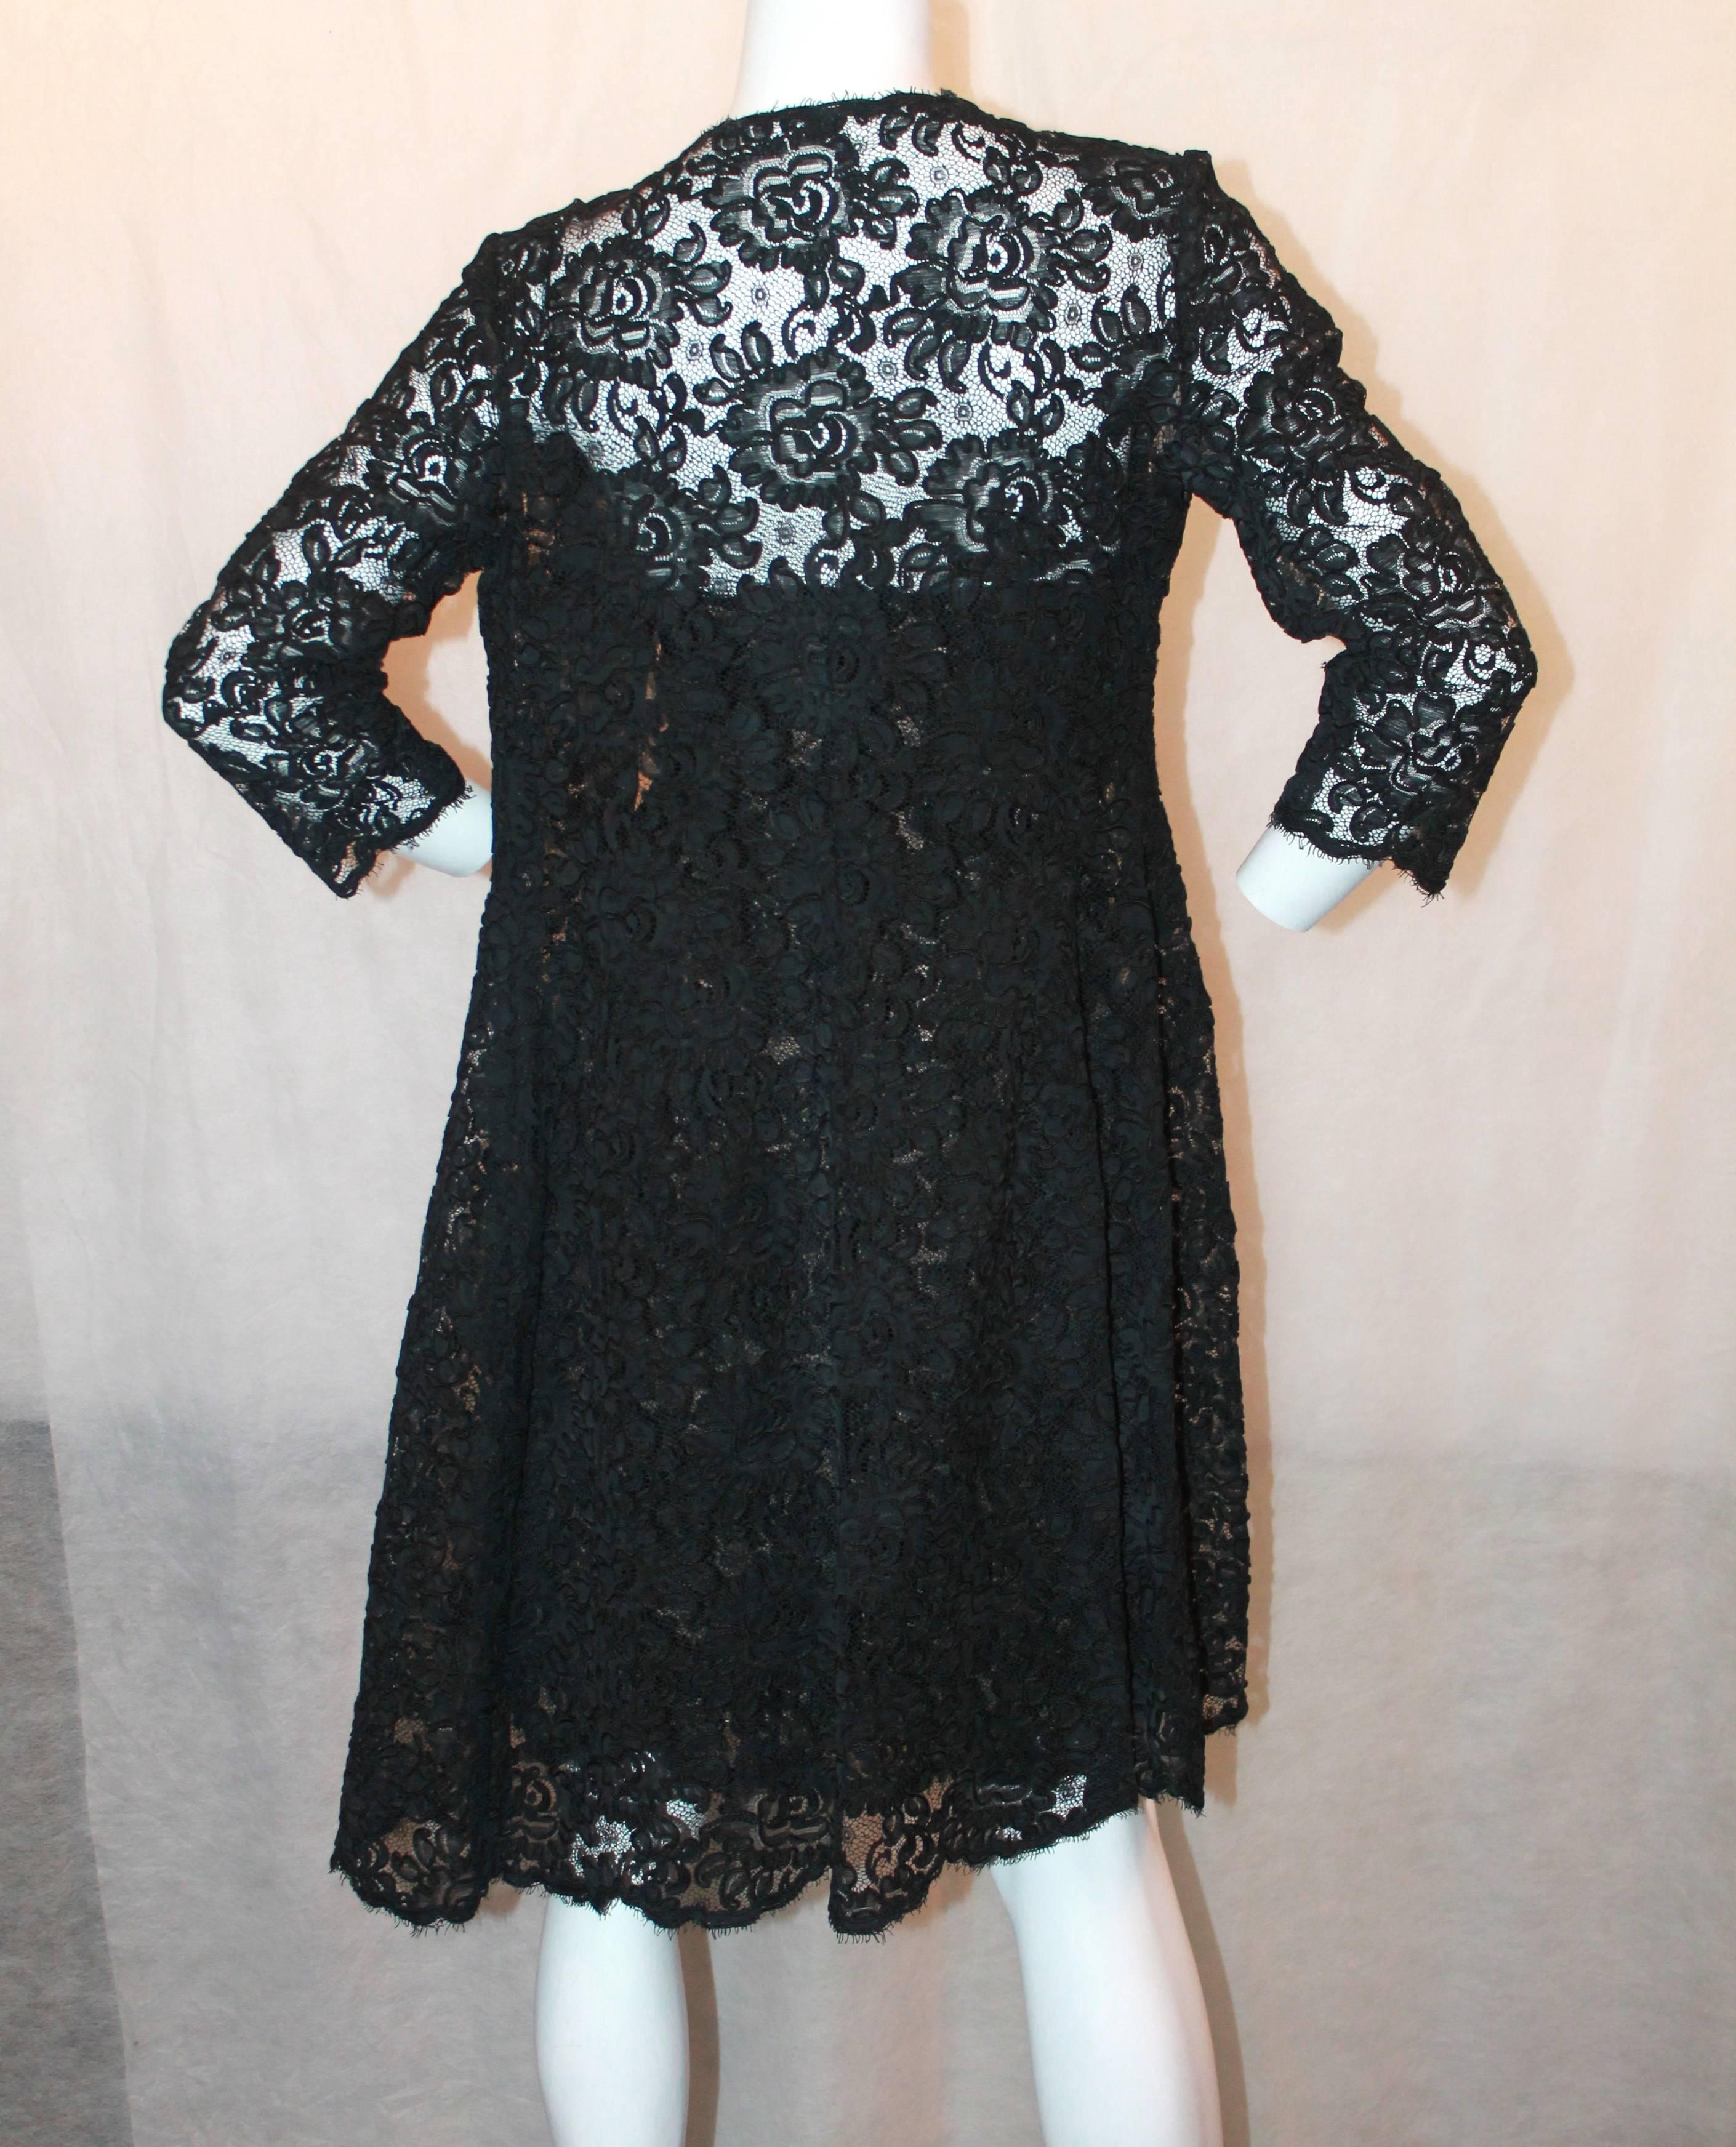 Women's Oscar de la Renta 1990's Vintage Black Lace Soutache Dress & Coat - M